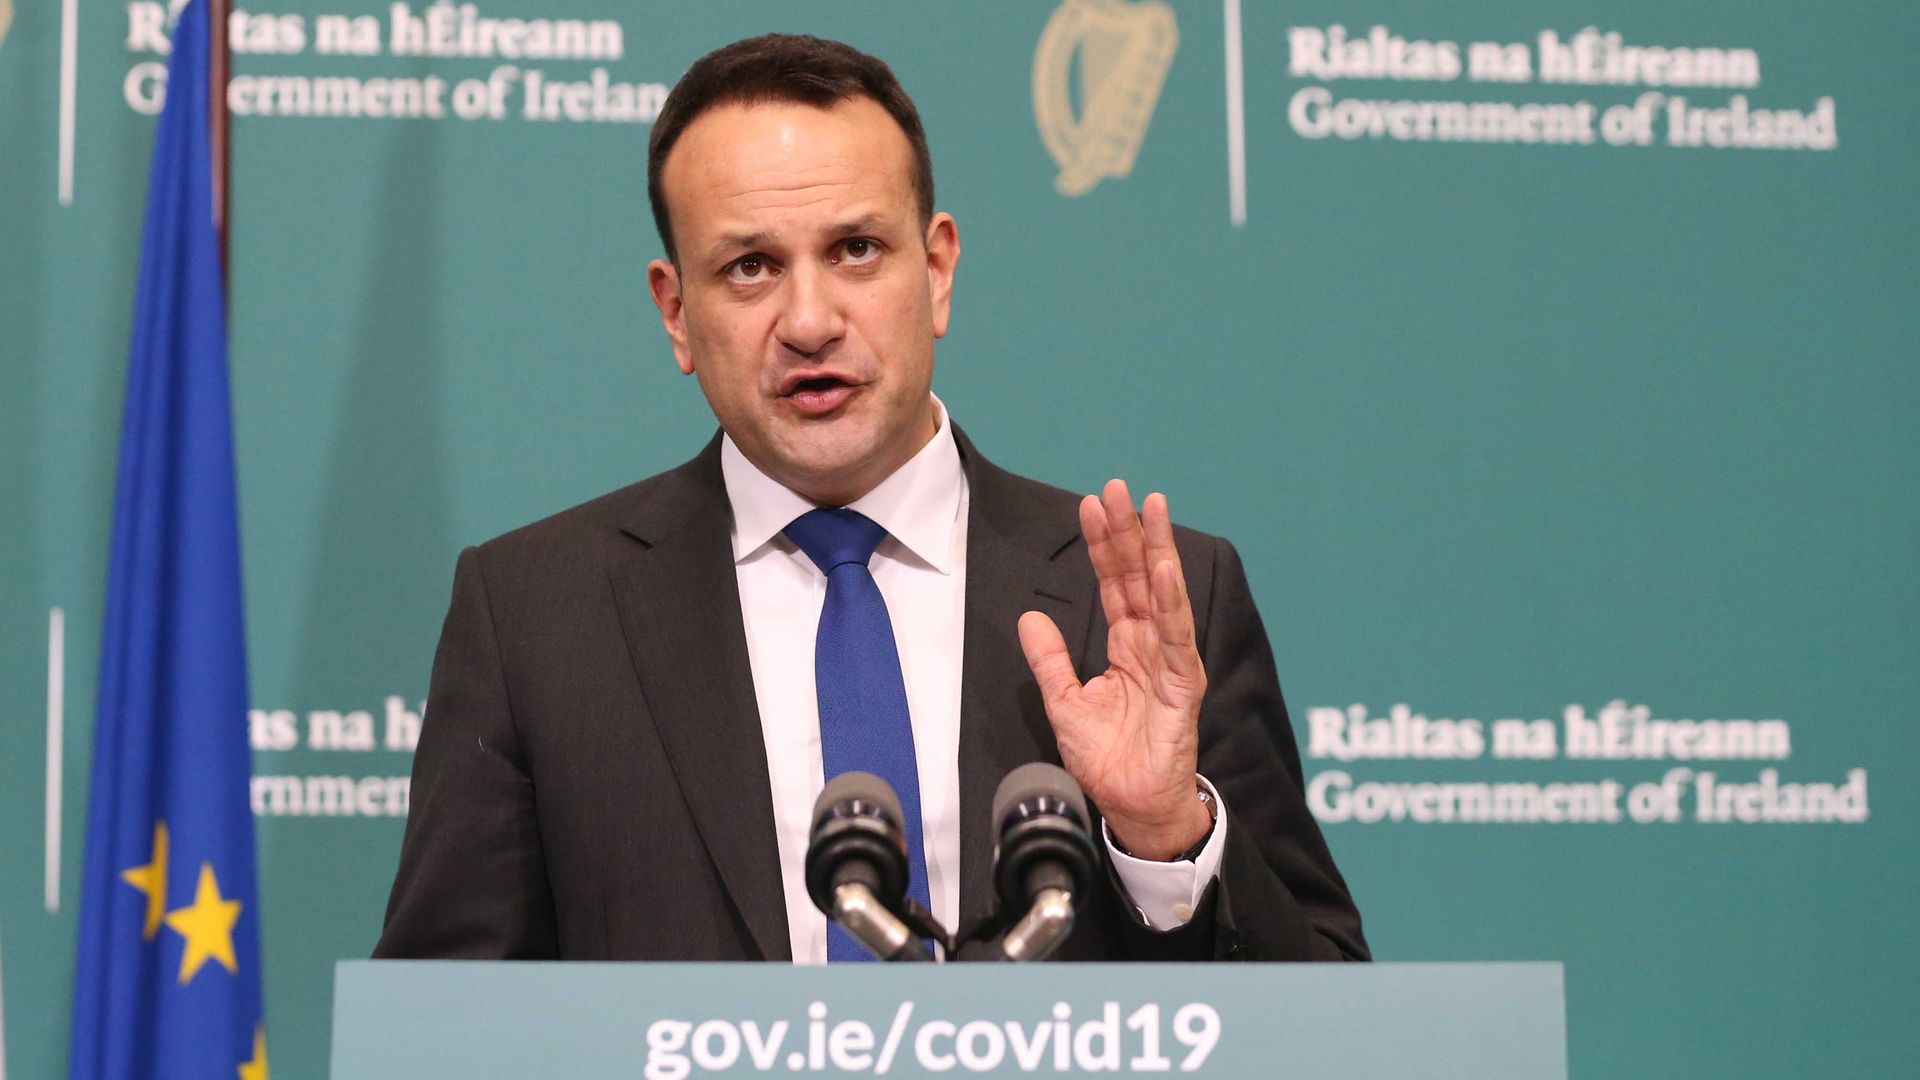 Irish Prime Minister Returns To Medicine To Help With Coronavirus